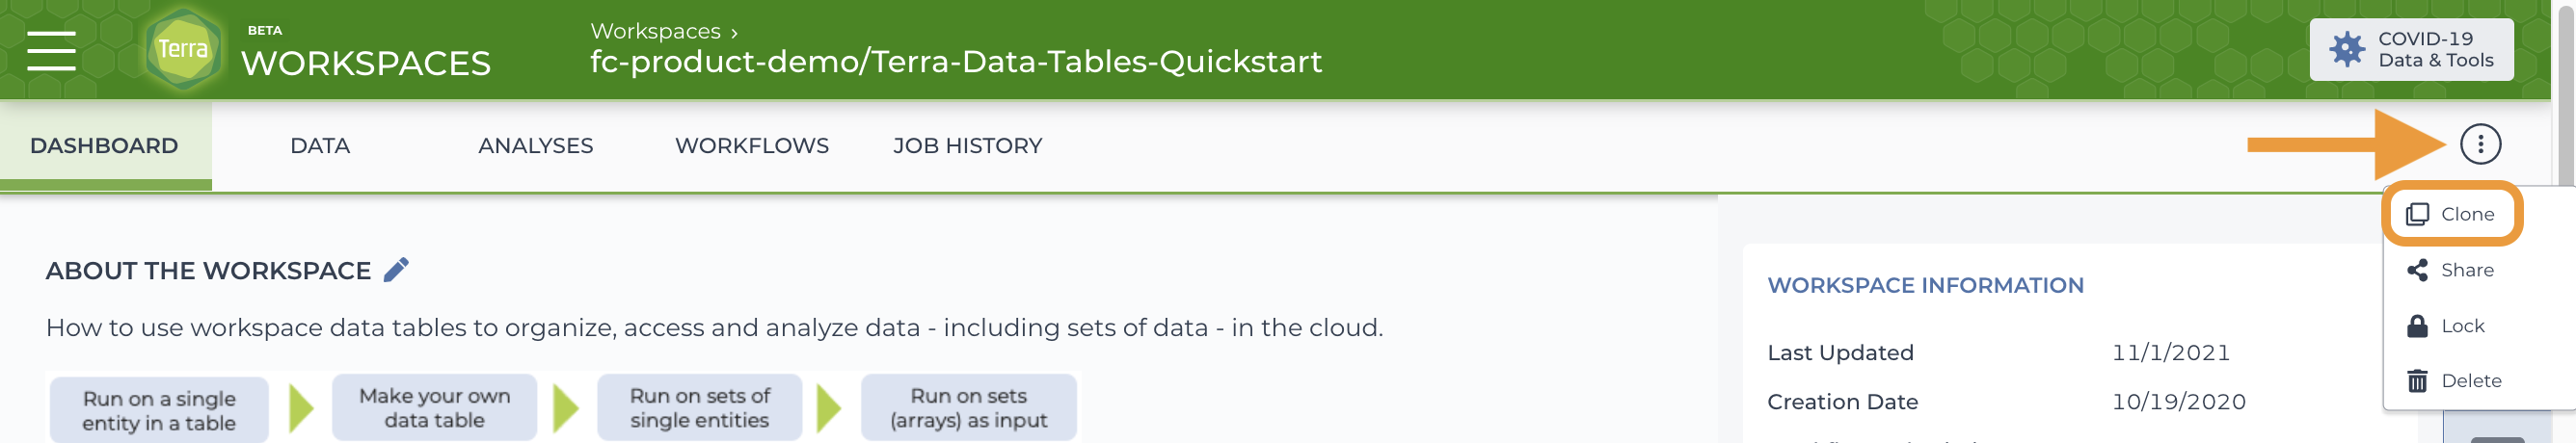 Clone-Data-Tables-QuickStart_Screen_Shot.png